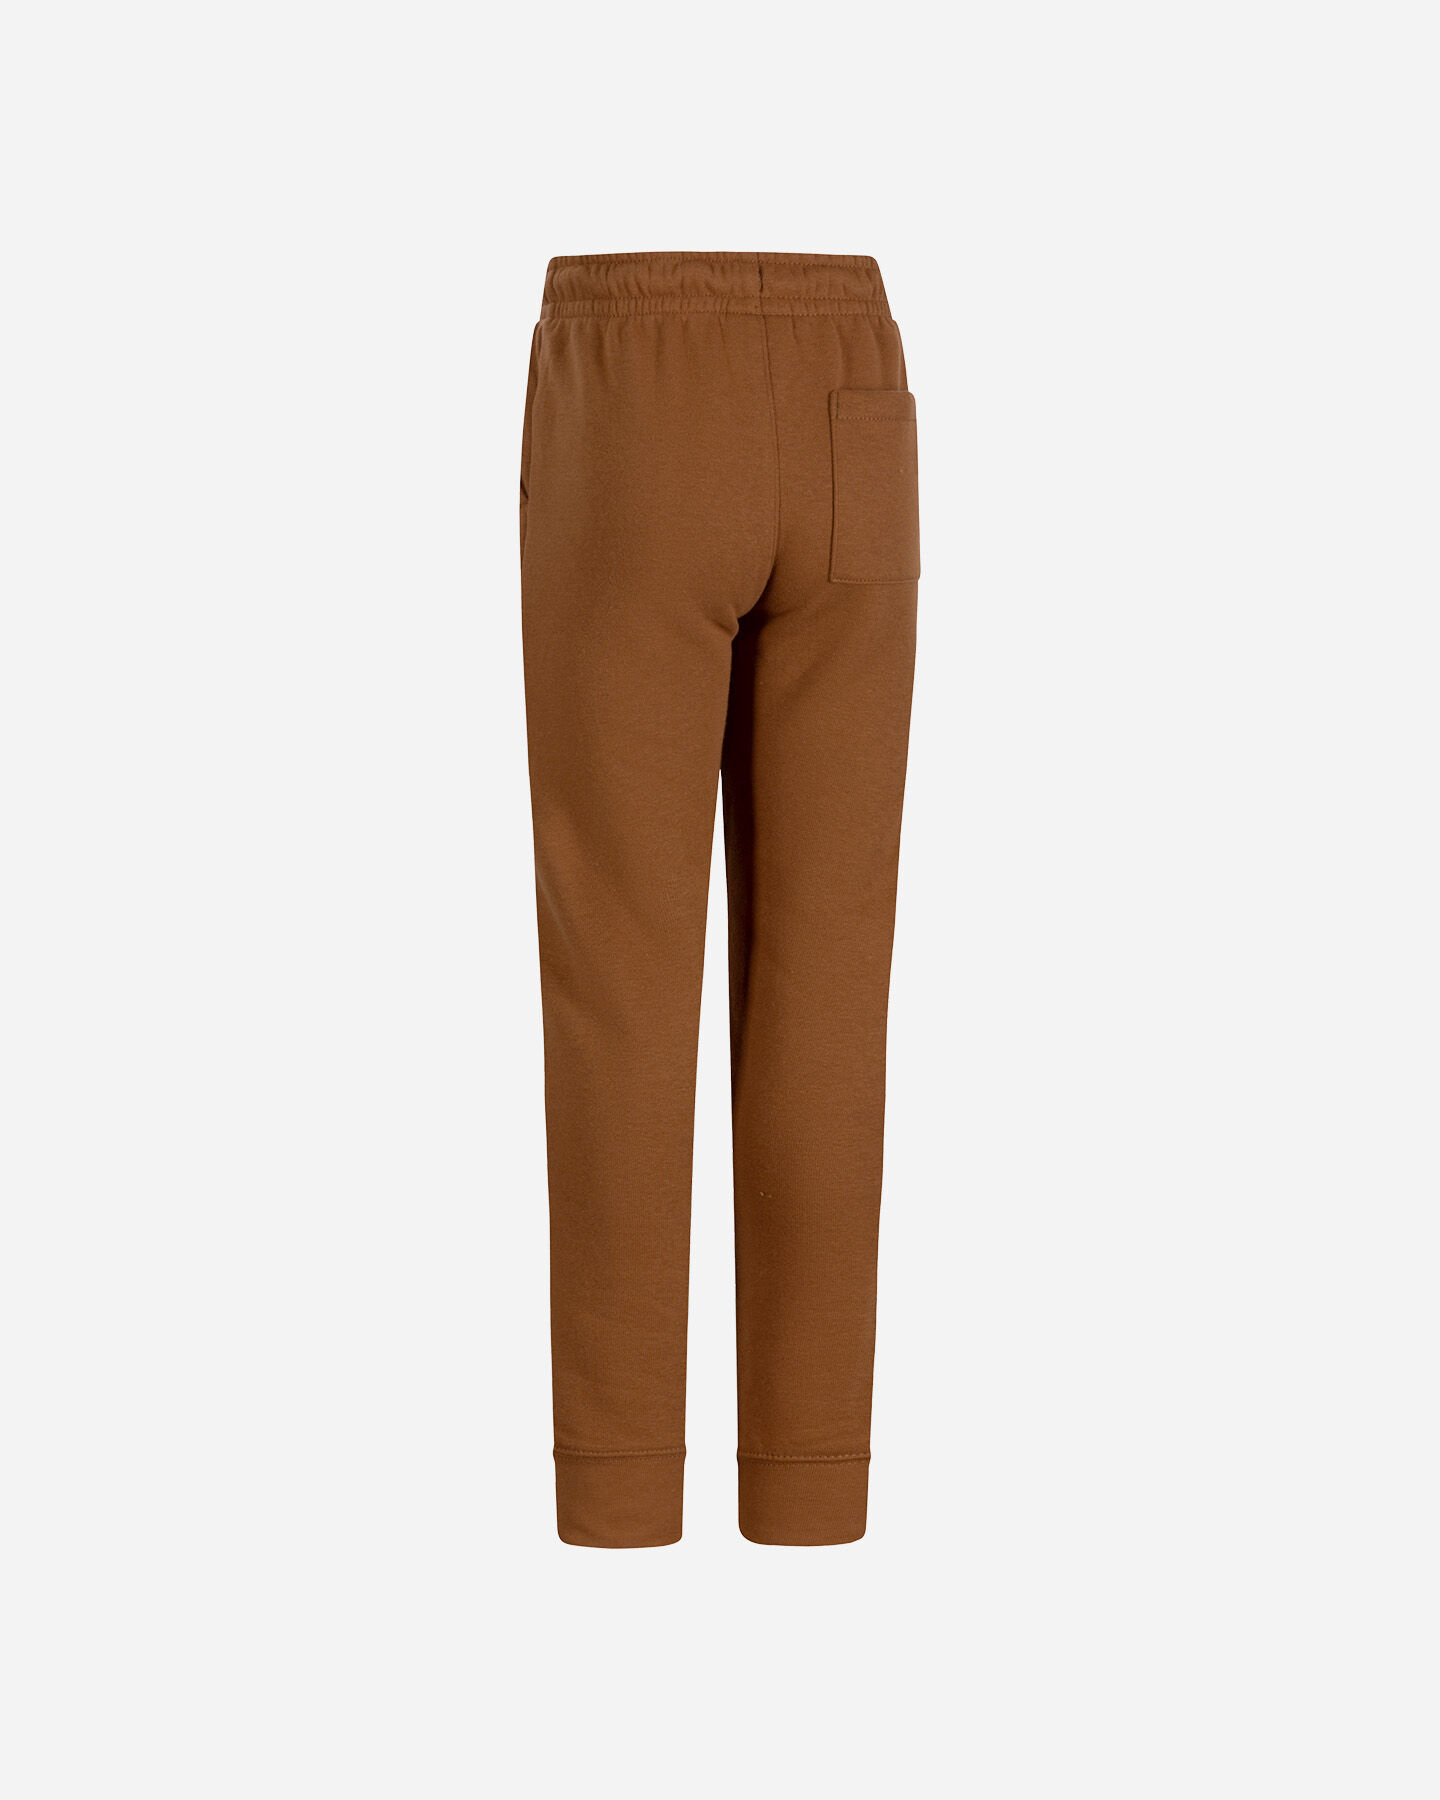  Pantalone NIKE JORDAN LOGO JR S5626690|X4A|8-10Y scatto 1